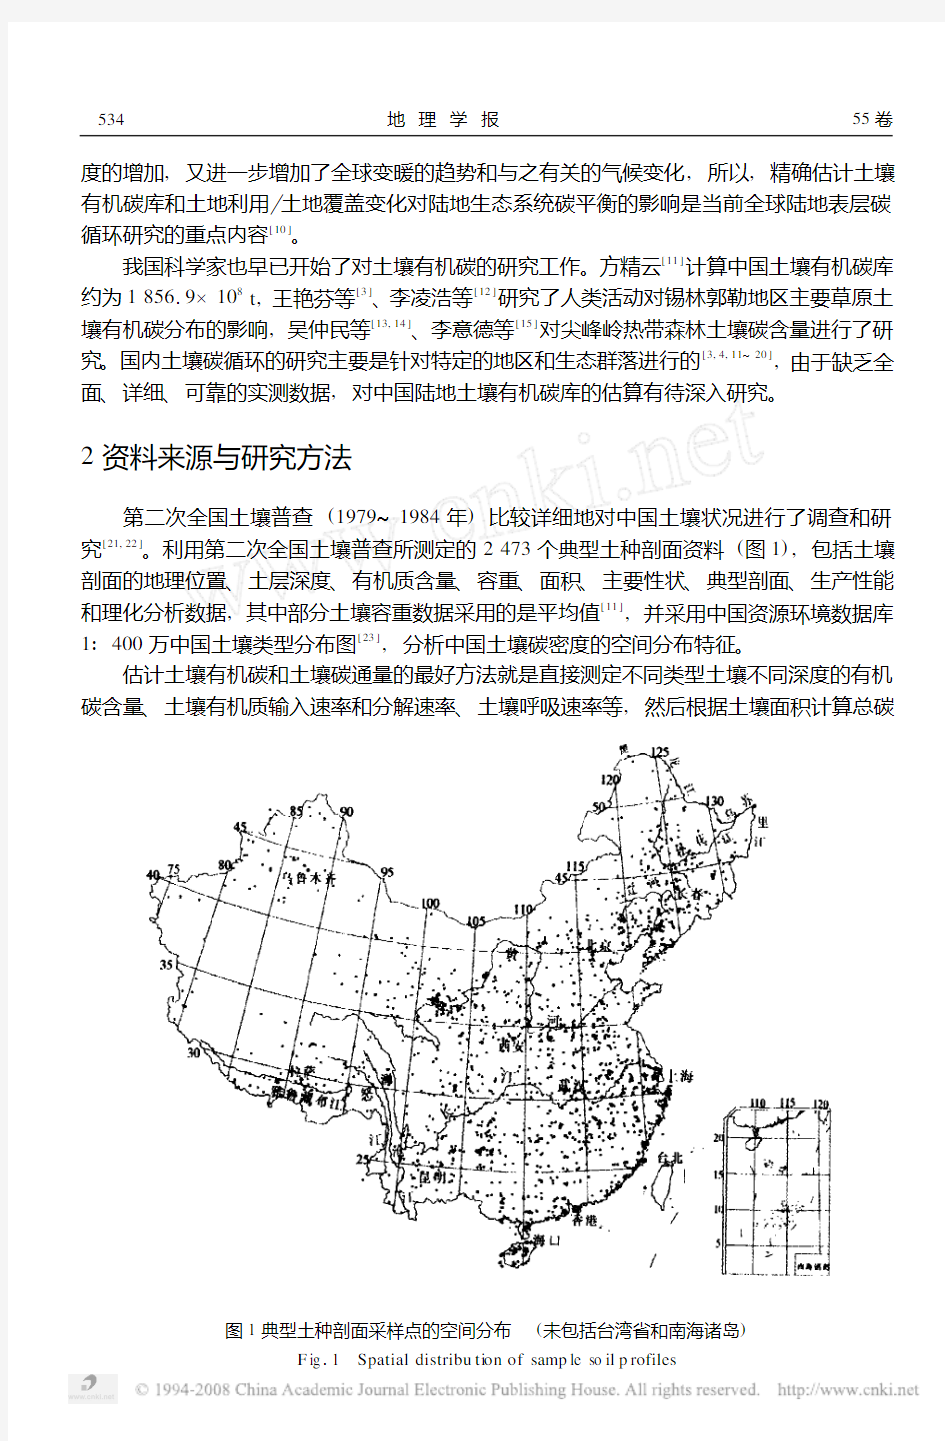 中国土壤有机碳库及空间分布特征分析